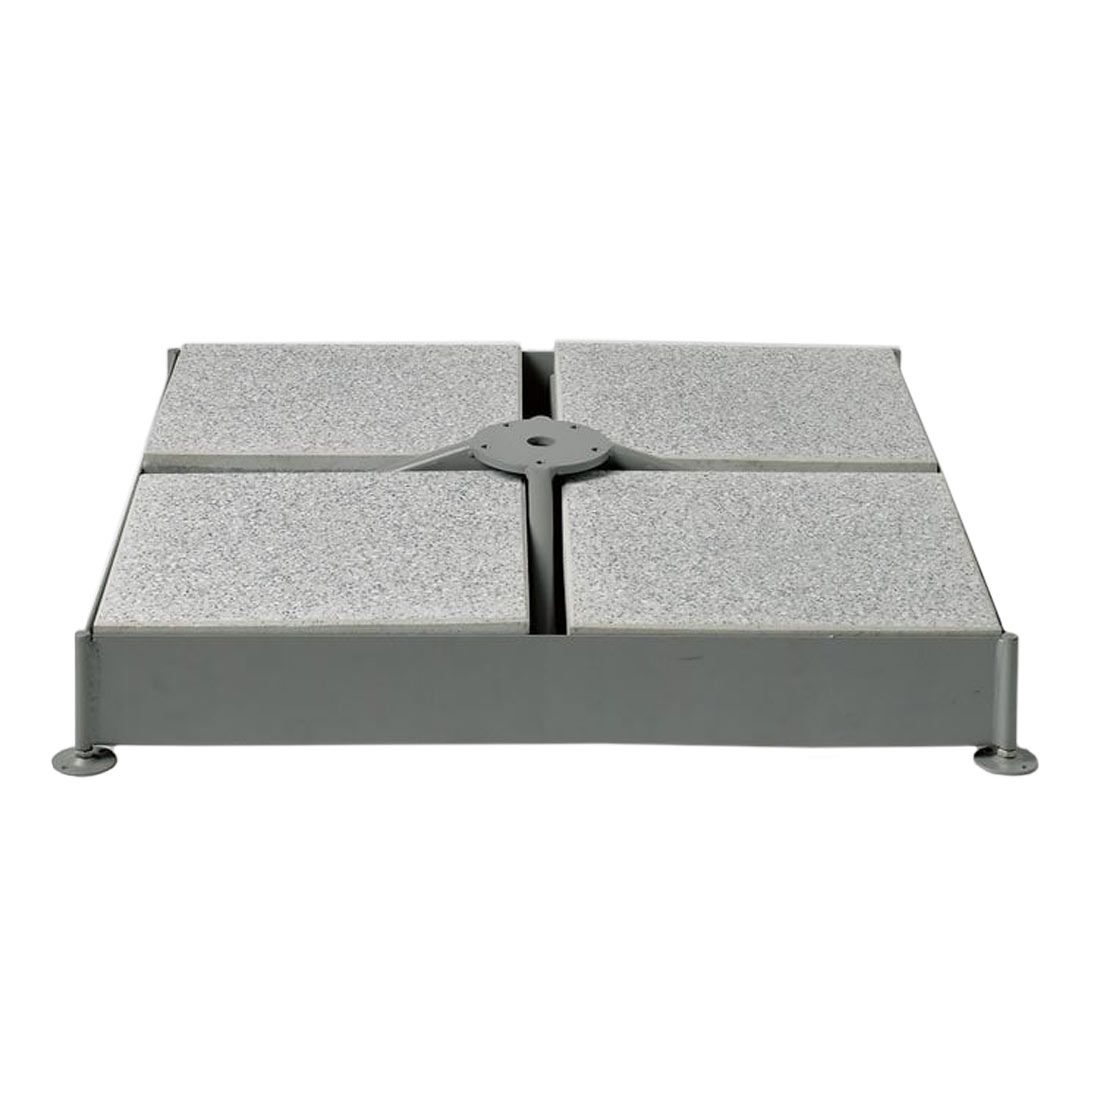 Glatz Schirmsockel M4 für 12 Platten - grau 91x91x15 cm - ohne Platten - ohne Standrohr